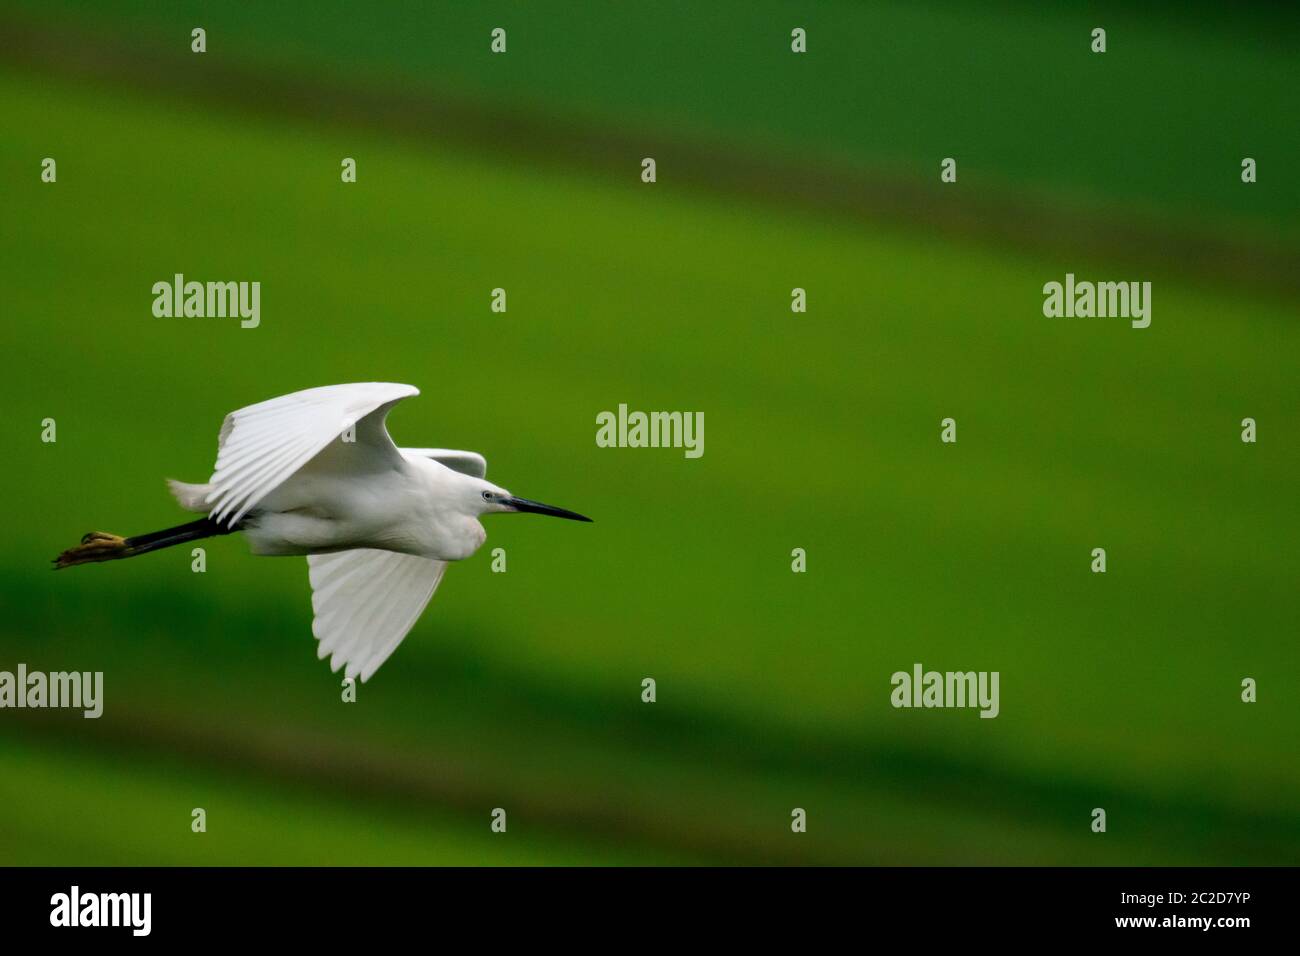 Grande uccello egreo in volo su un campo verde Foto Stock